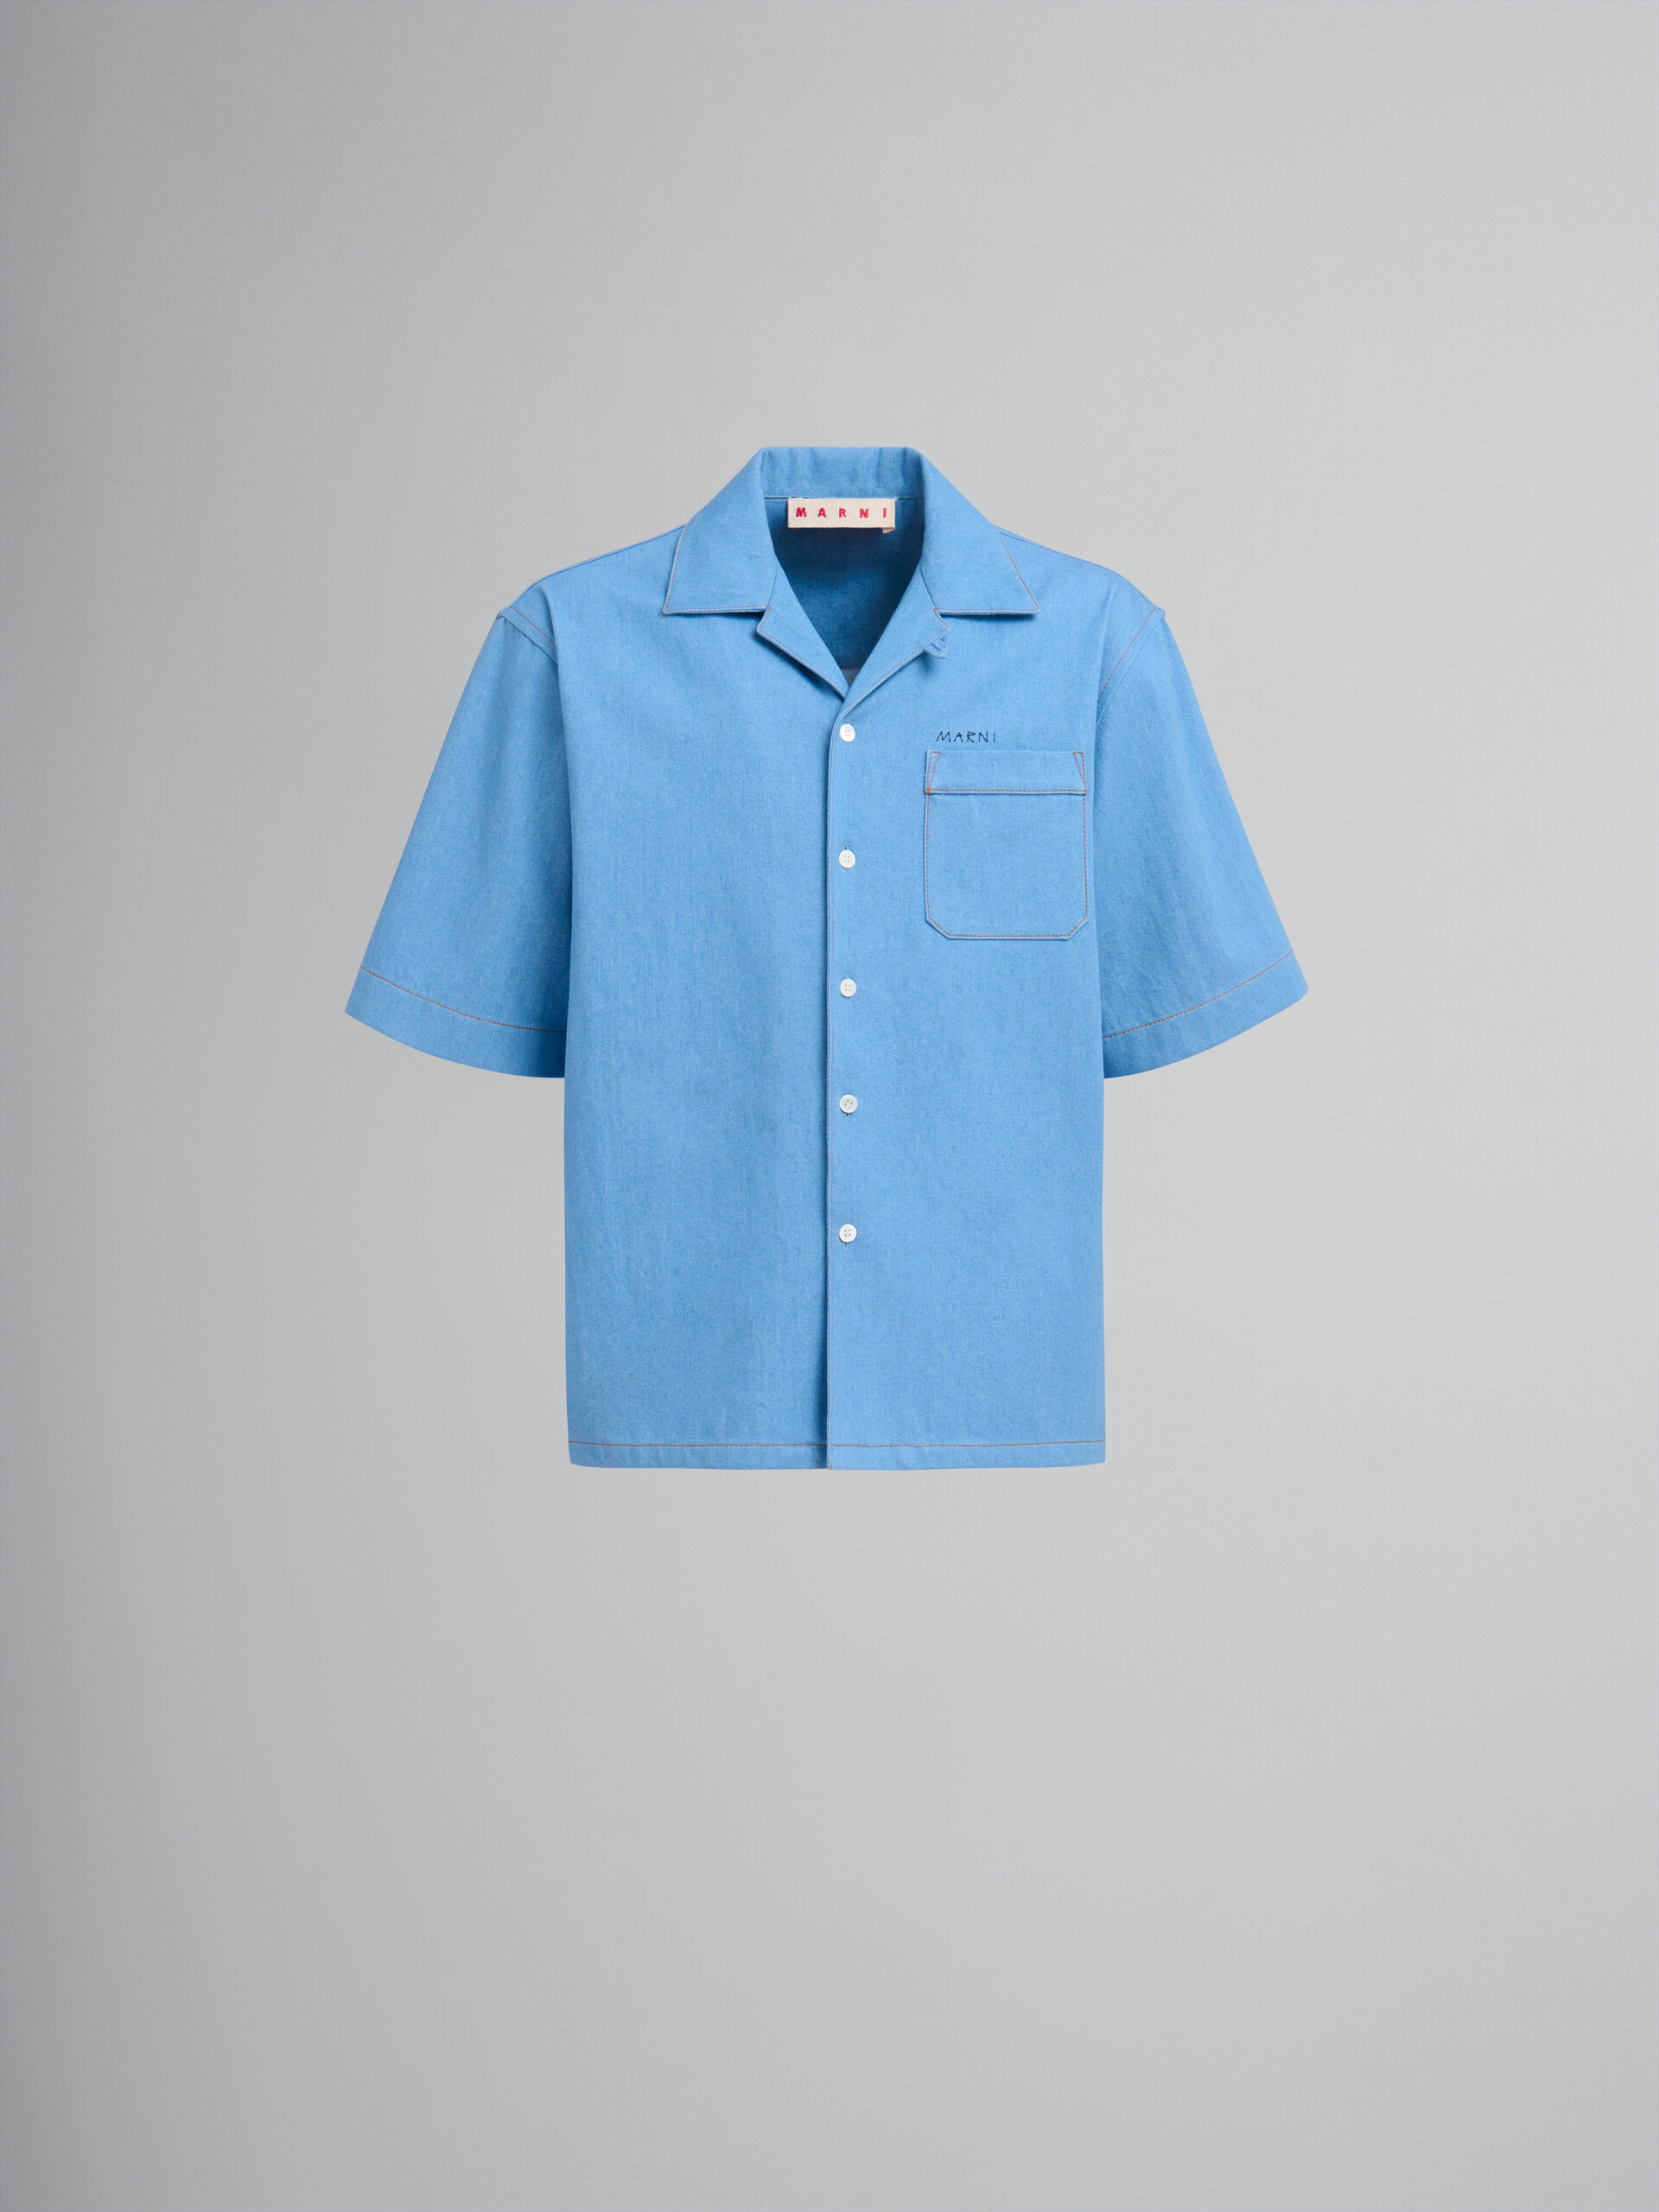 Blaues Bowlinghemd aus Denim mit Marni-Flickenlogo - Hemden - Image 1